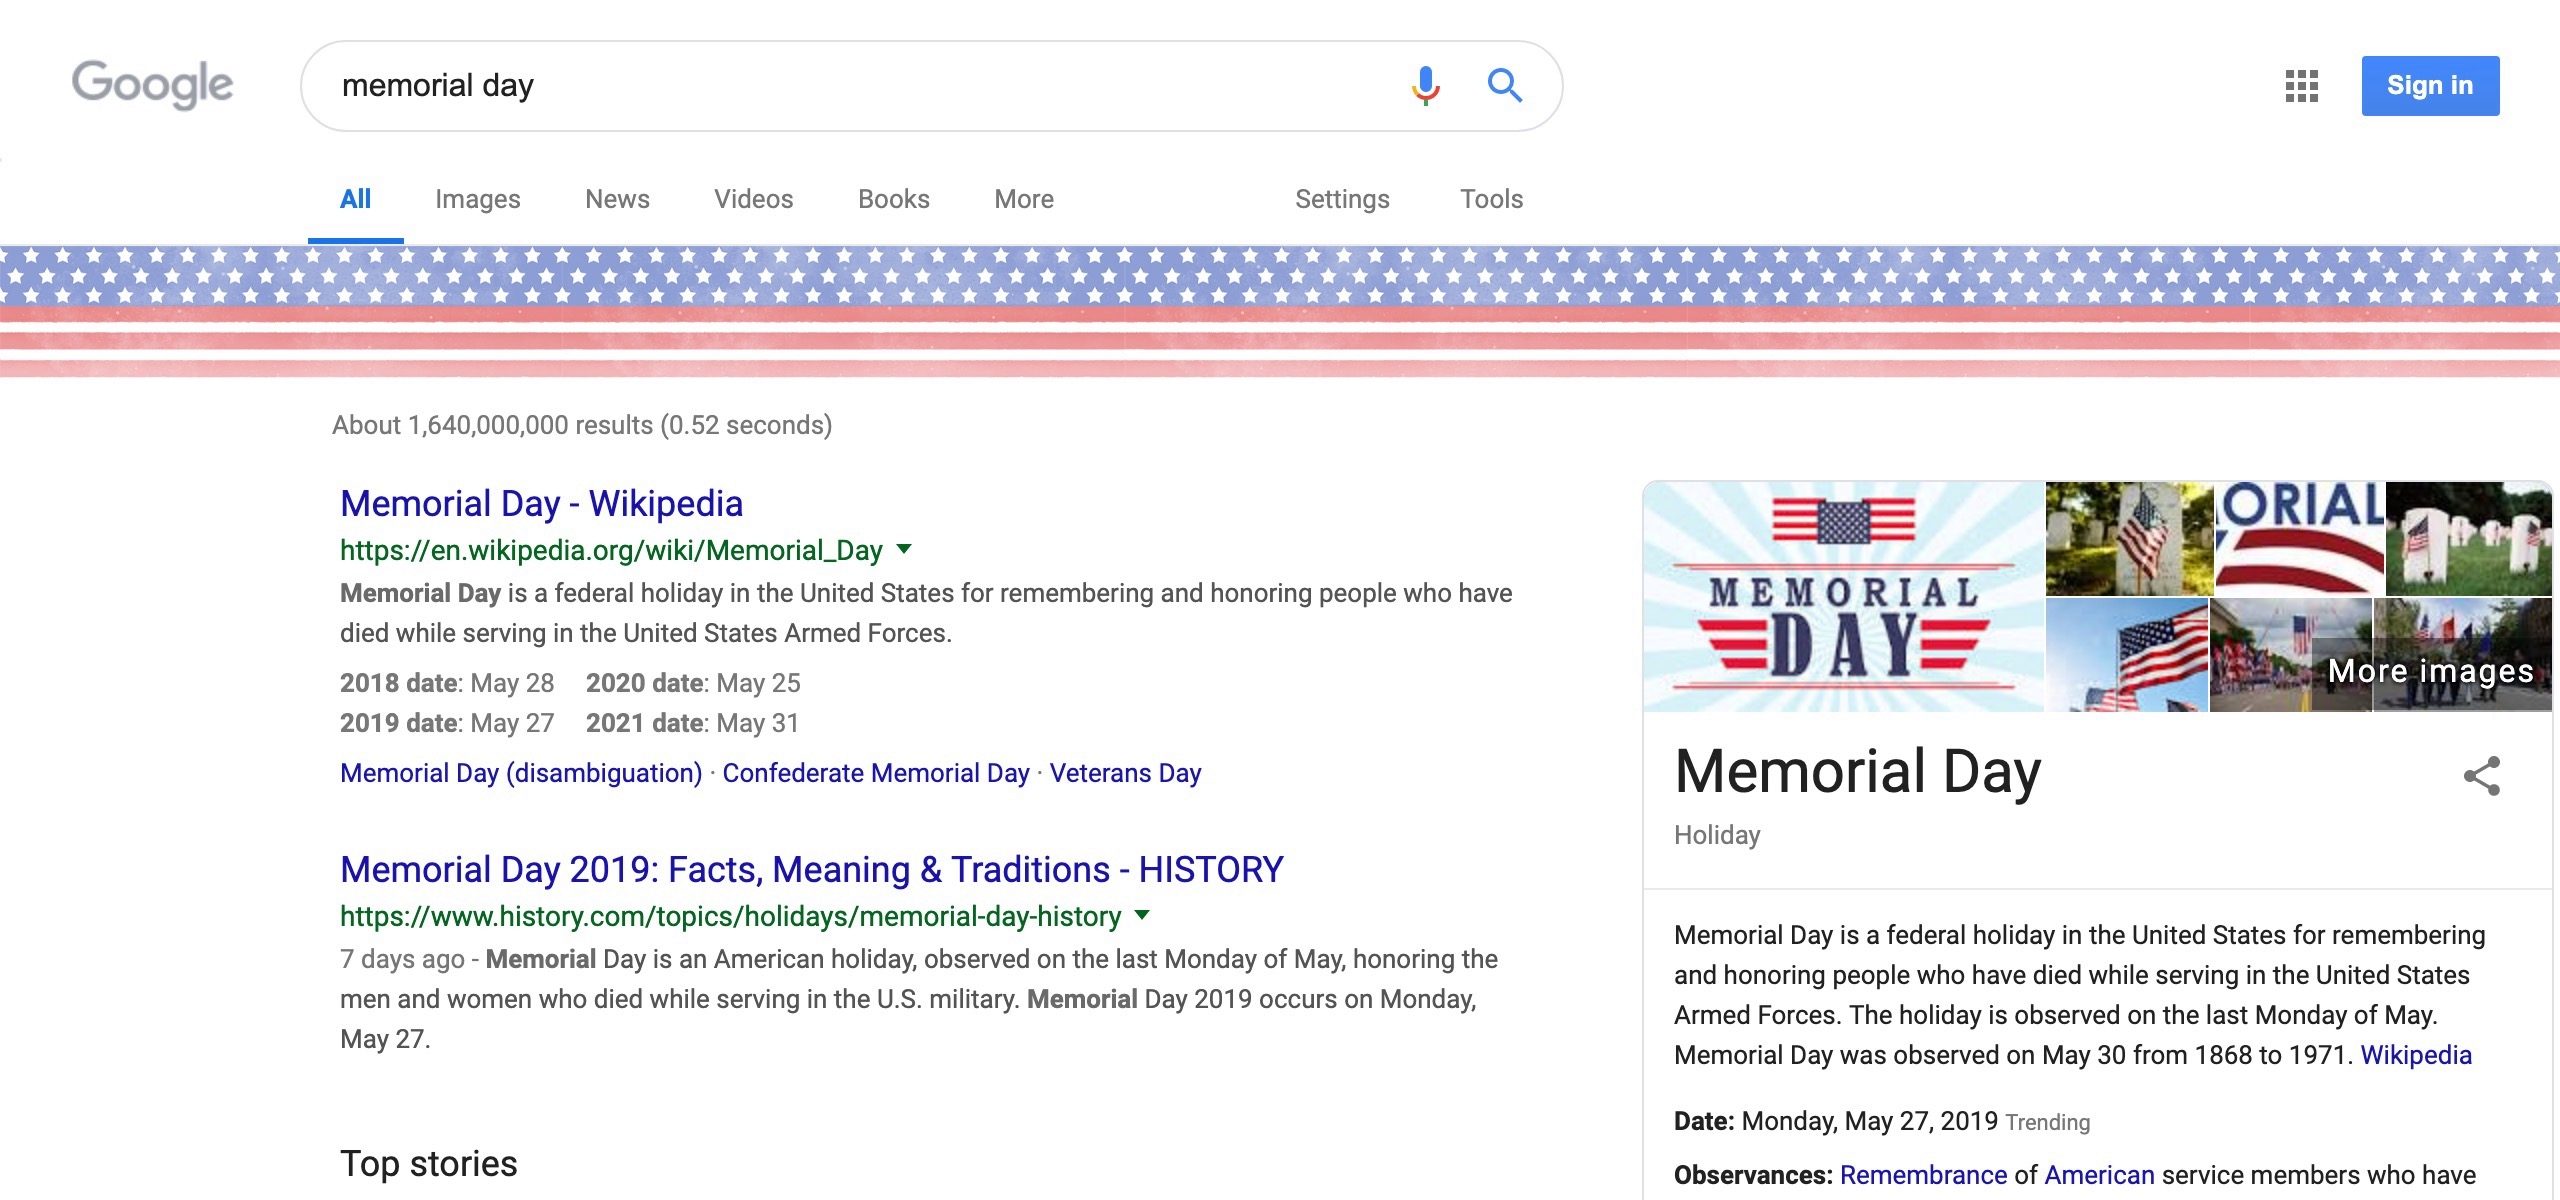 Dia do Memorial do Doodle do Google